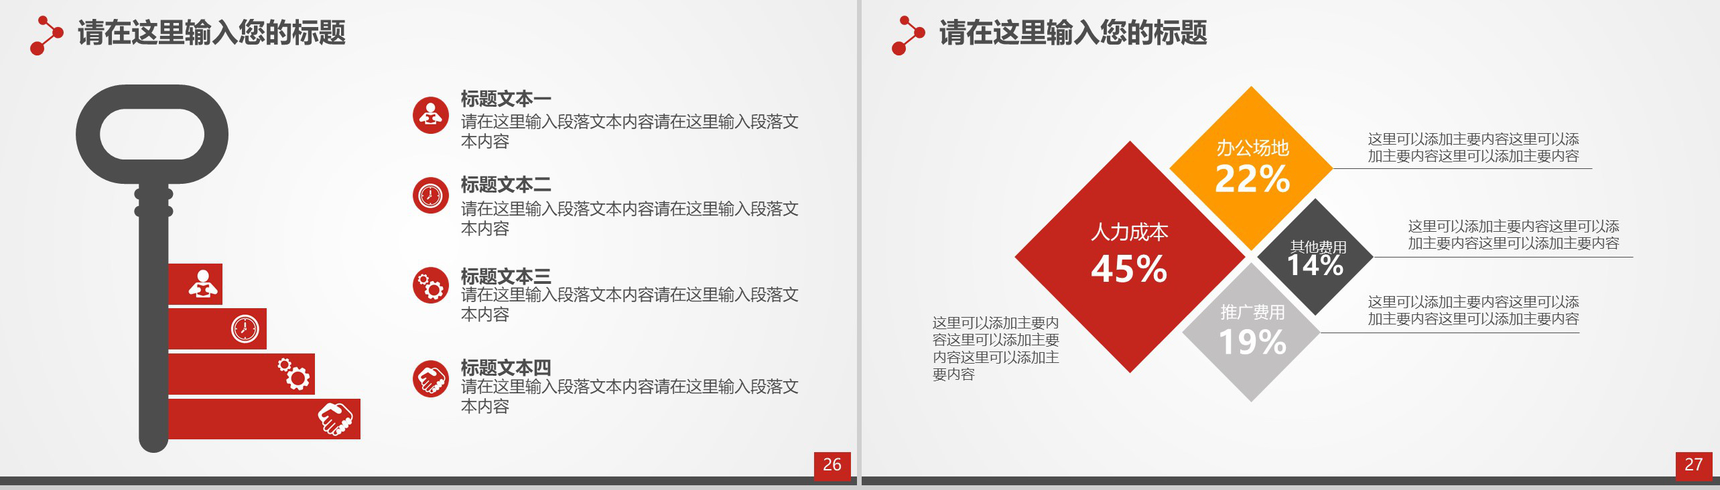 喜庆中国风企业签约仪式PPT模板-14